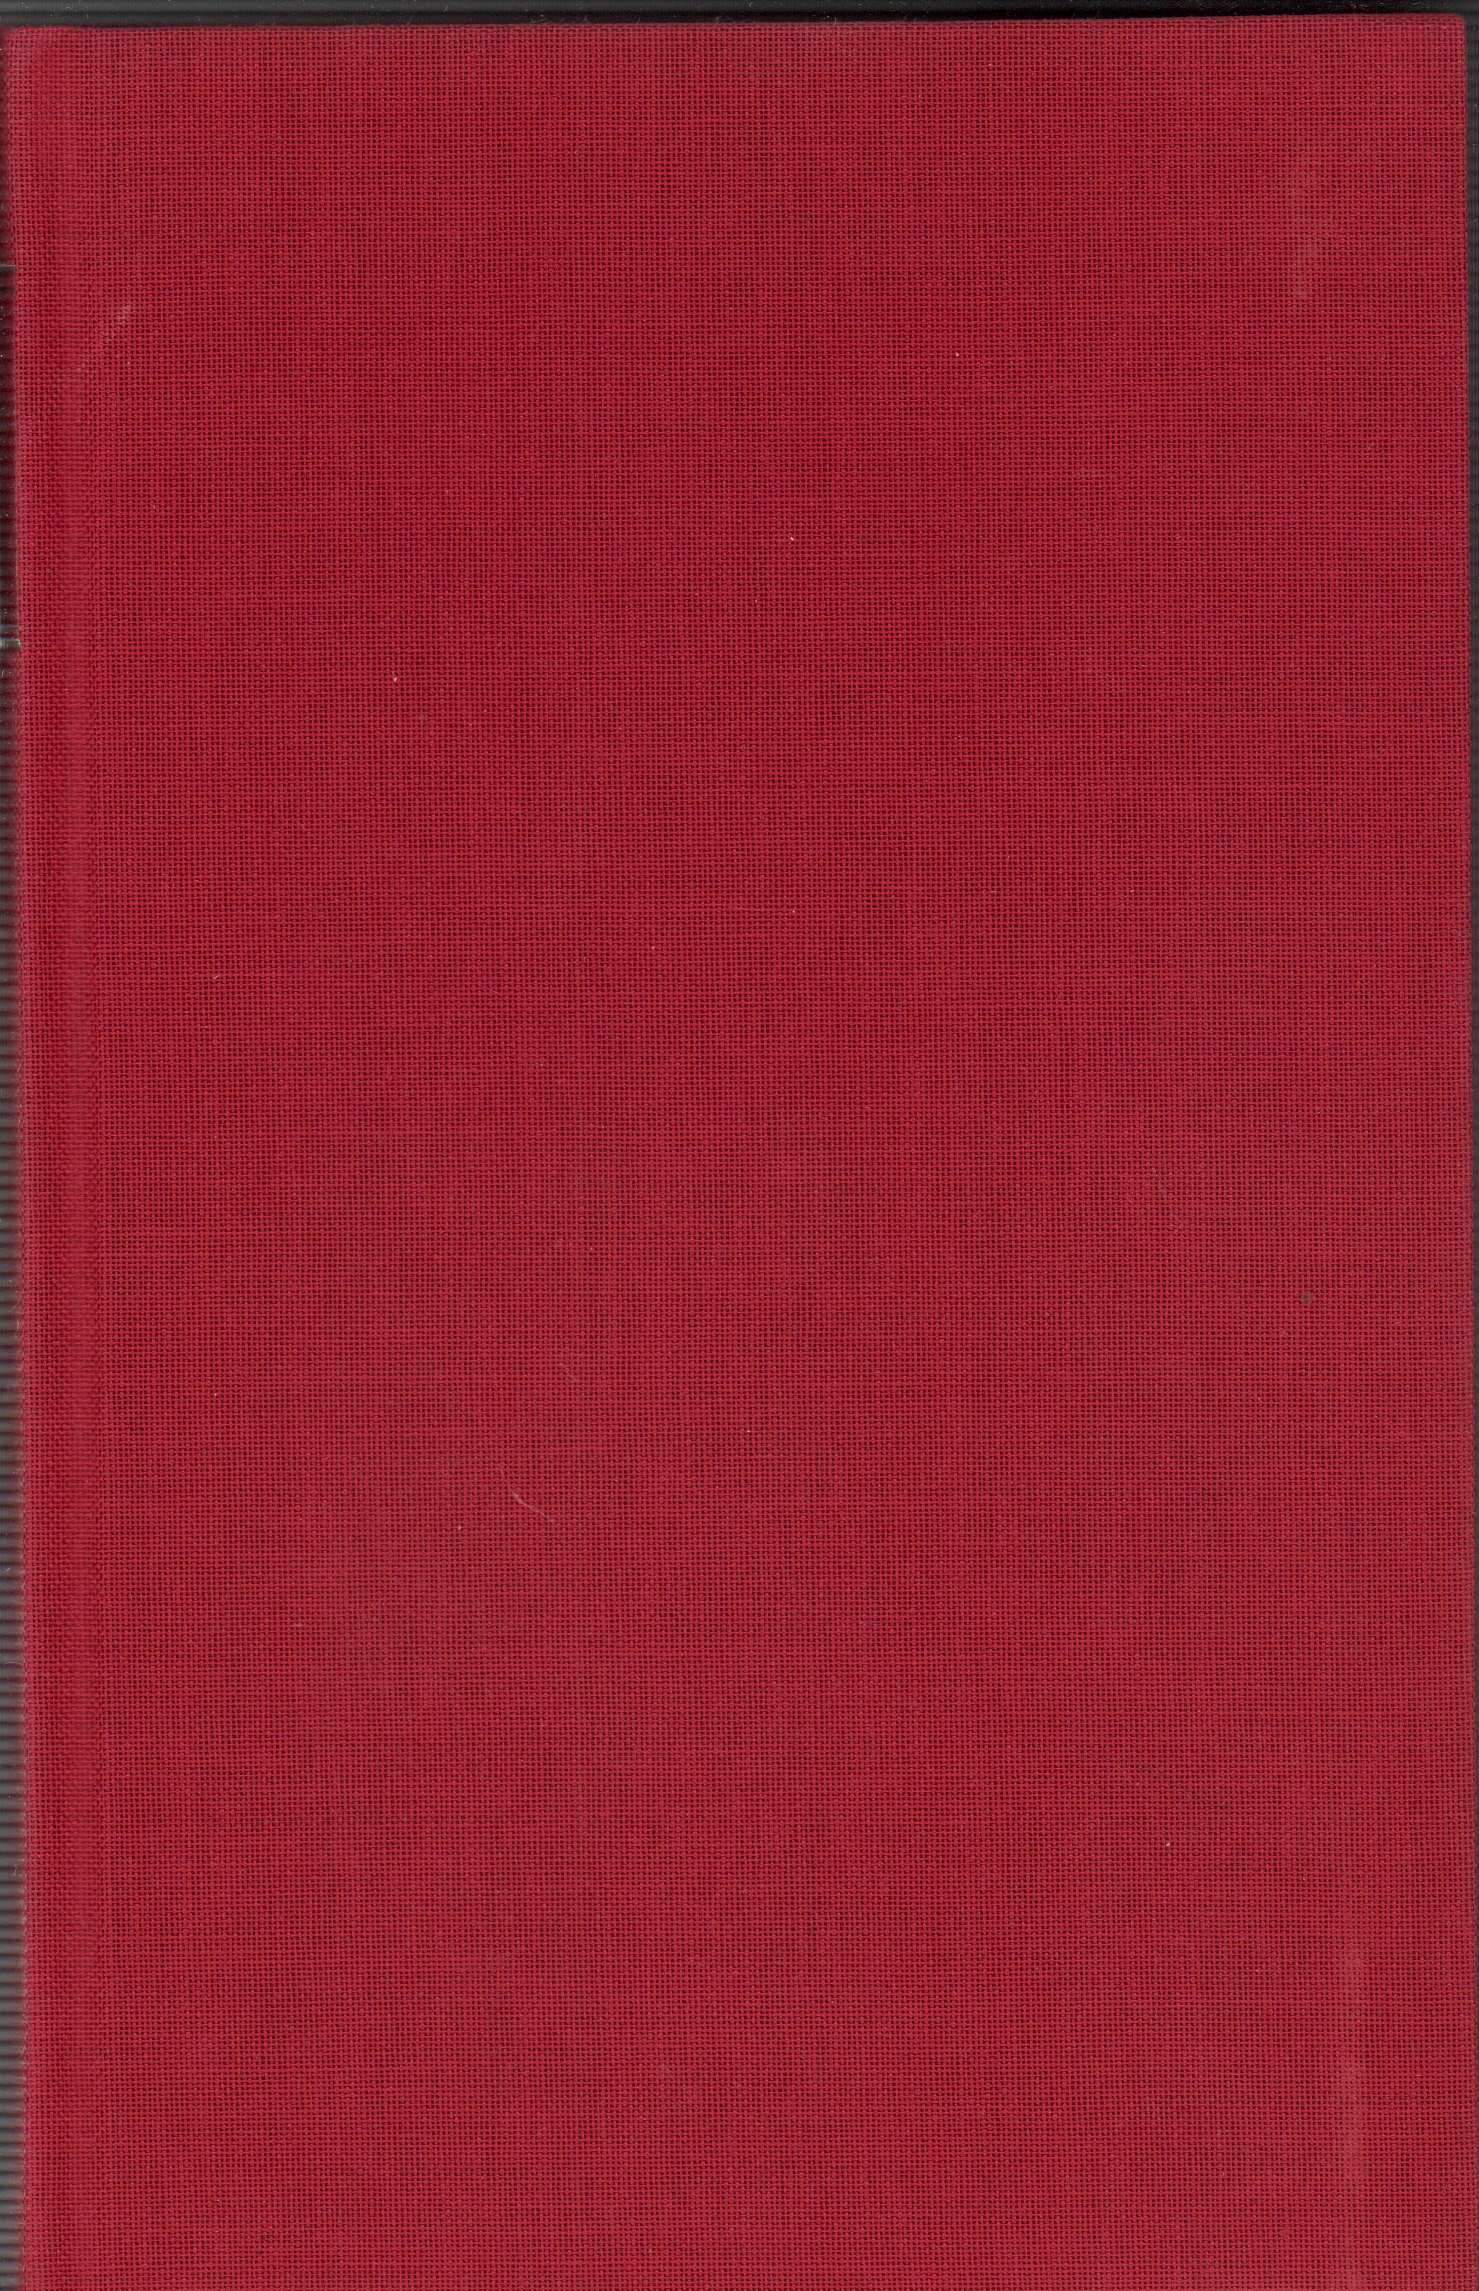 Tagebücher. Hrsg. von Wolfgang Martynkewicz. 3 Bde. (= komplett). - Schmitz, Oscar A[dolf] H[ermann].